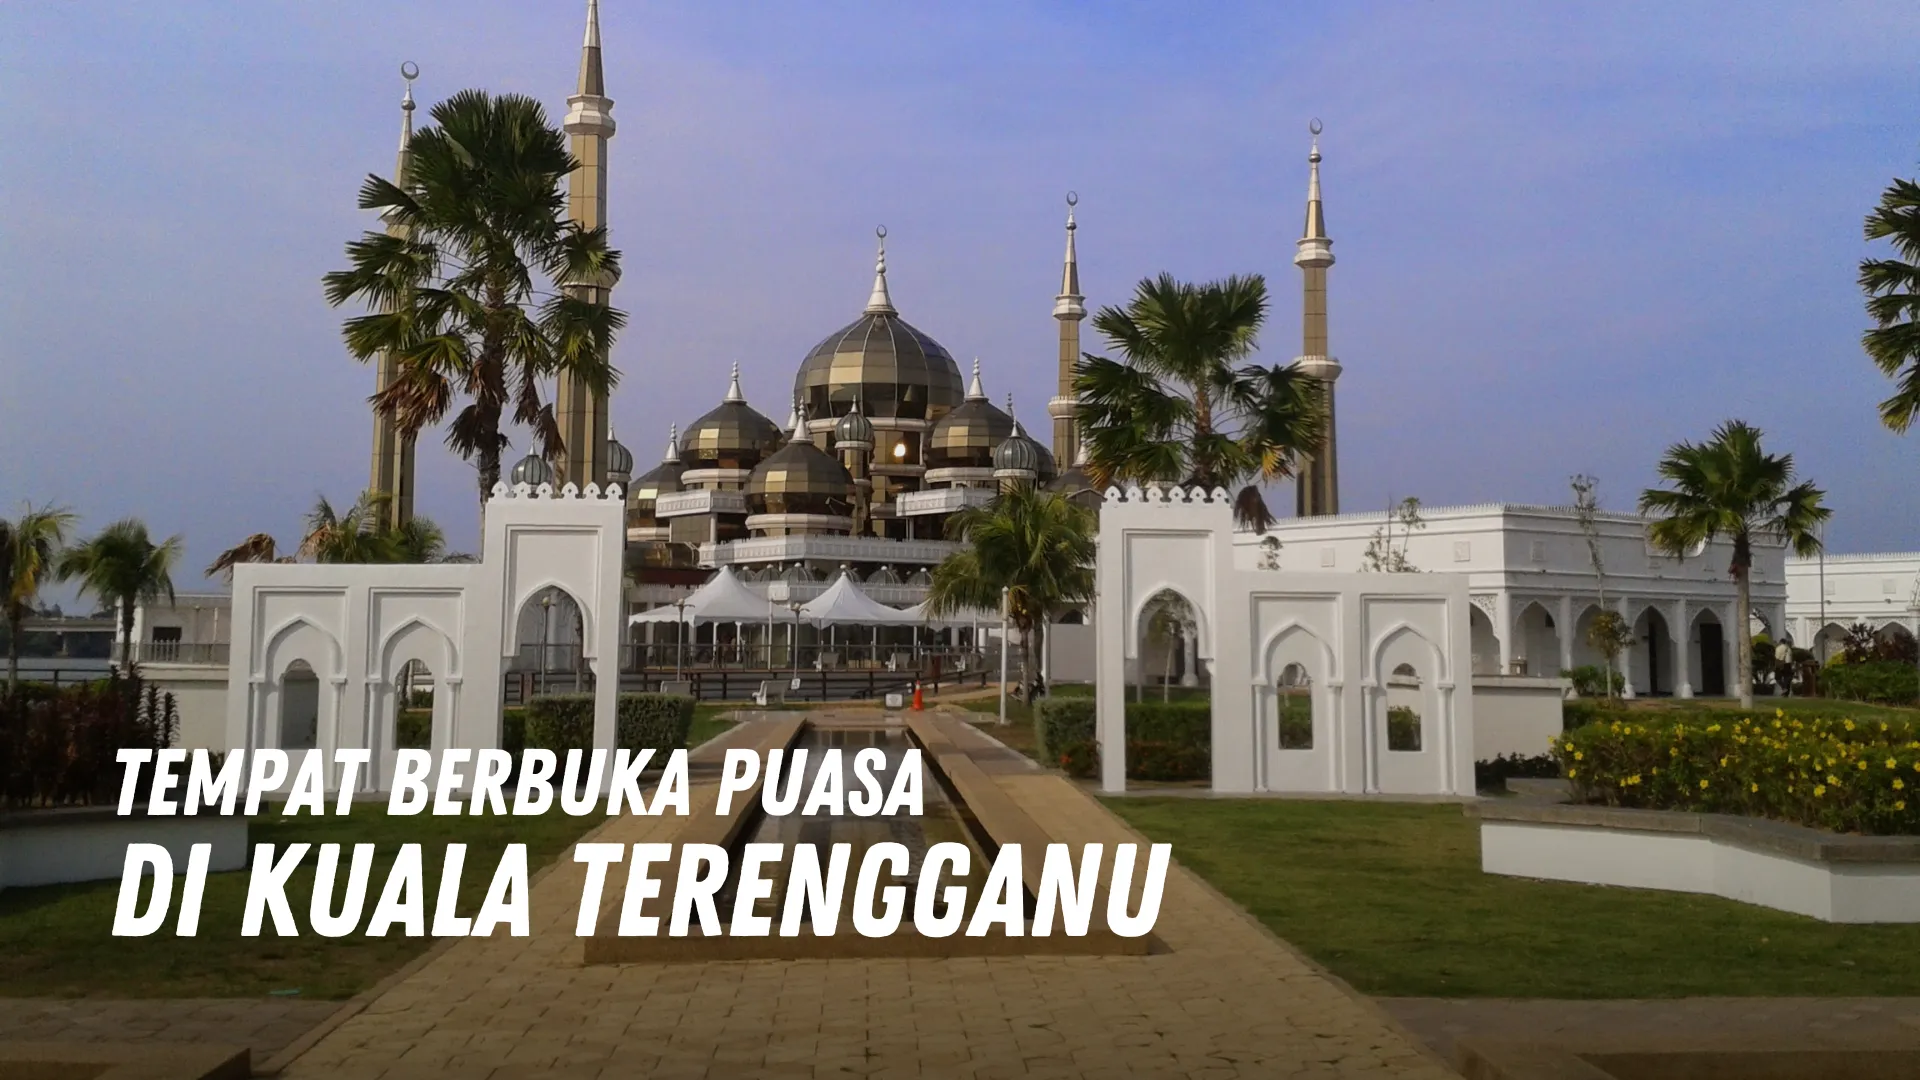 Tempat berbuka puasa di Kuala Terengganu Malaysia